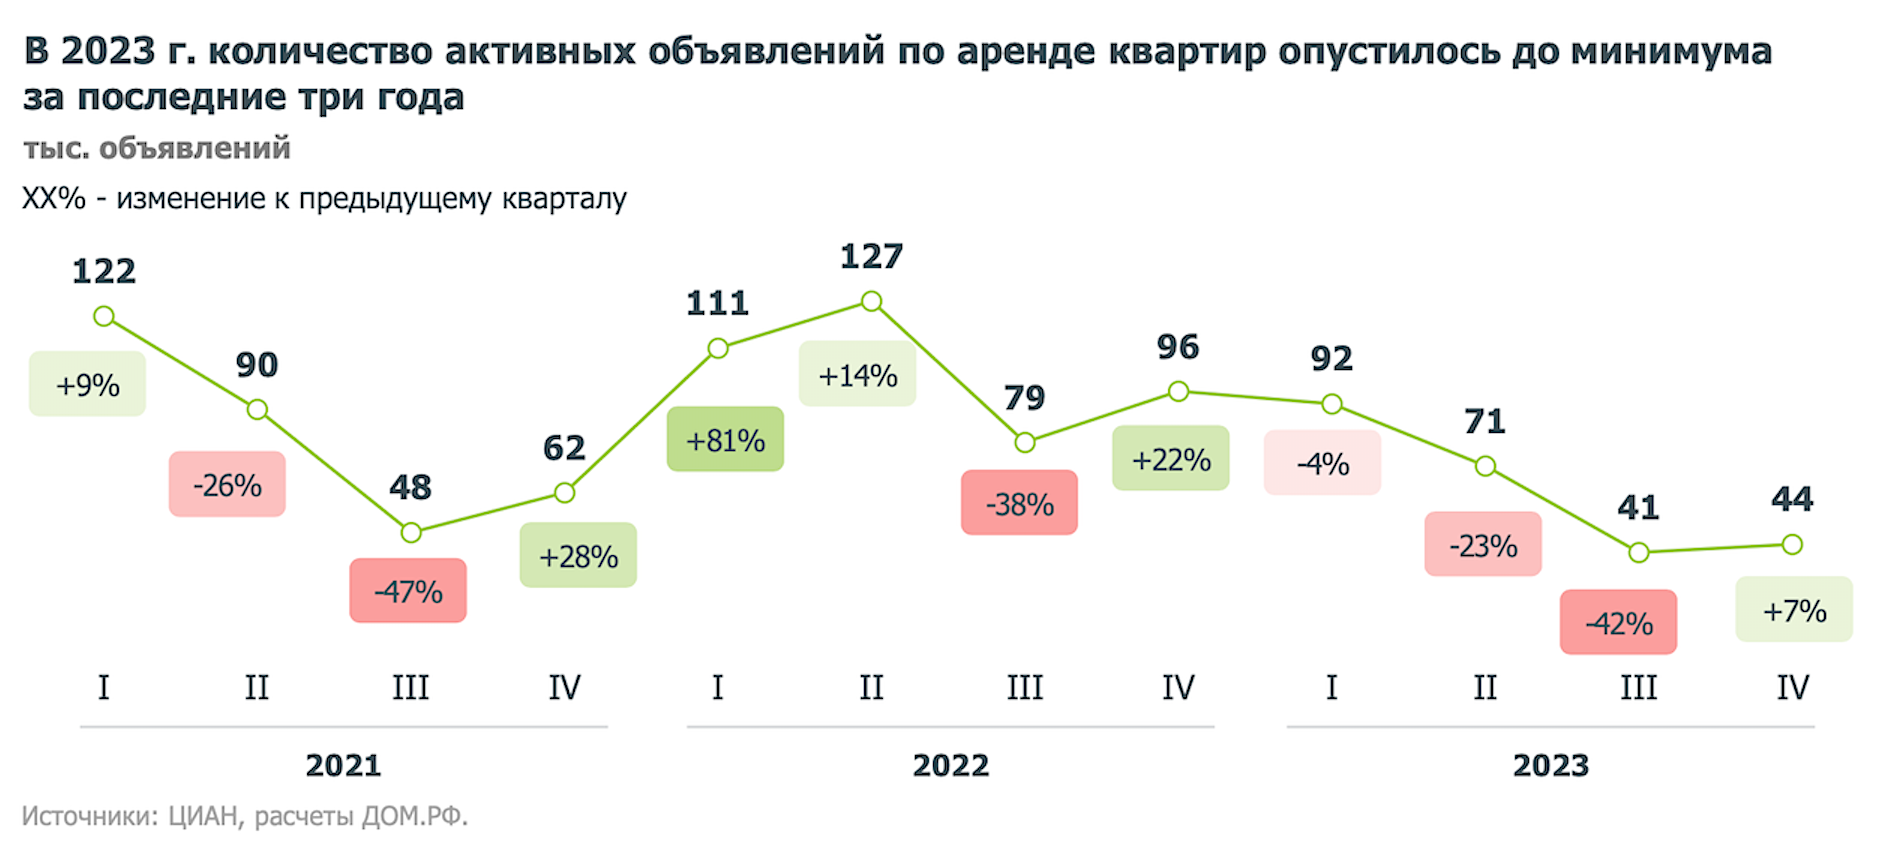 Число активных объявлений по аренде квартир в российских городах резко сократилось и по состоянию на 1 января 2024 года составило 44 тыс., что почти в 1,5&ndash;2 раза ниже уровня трех предыдущих лет